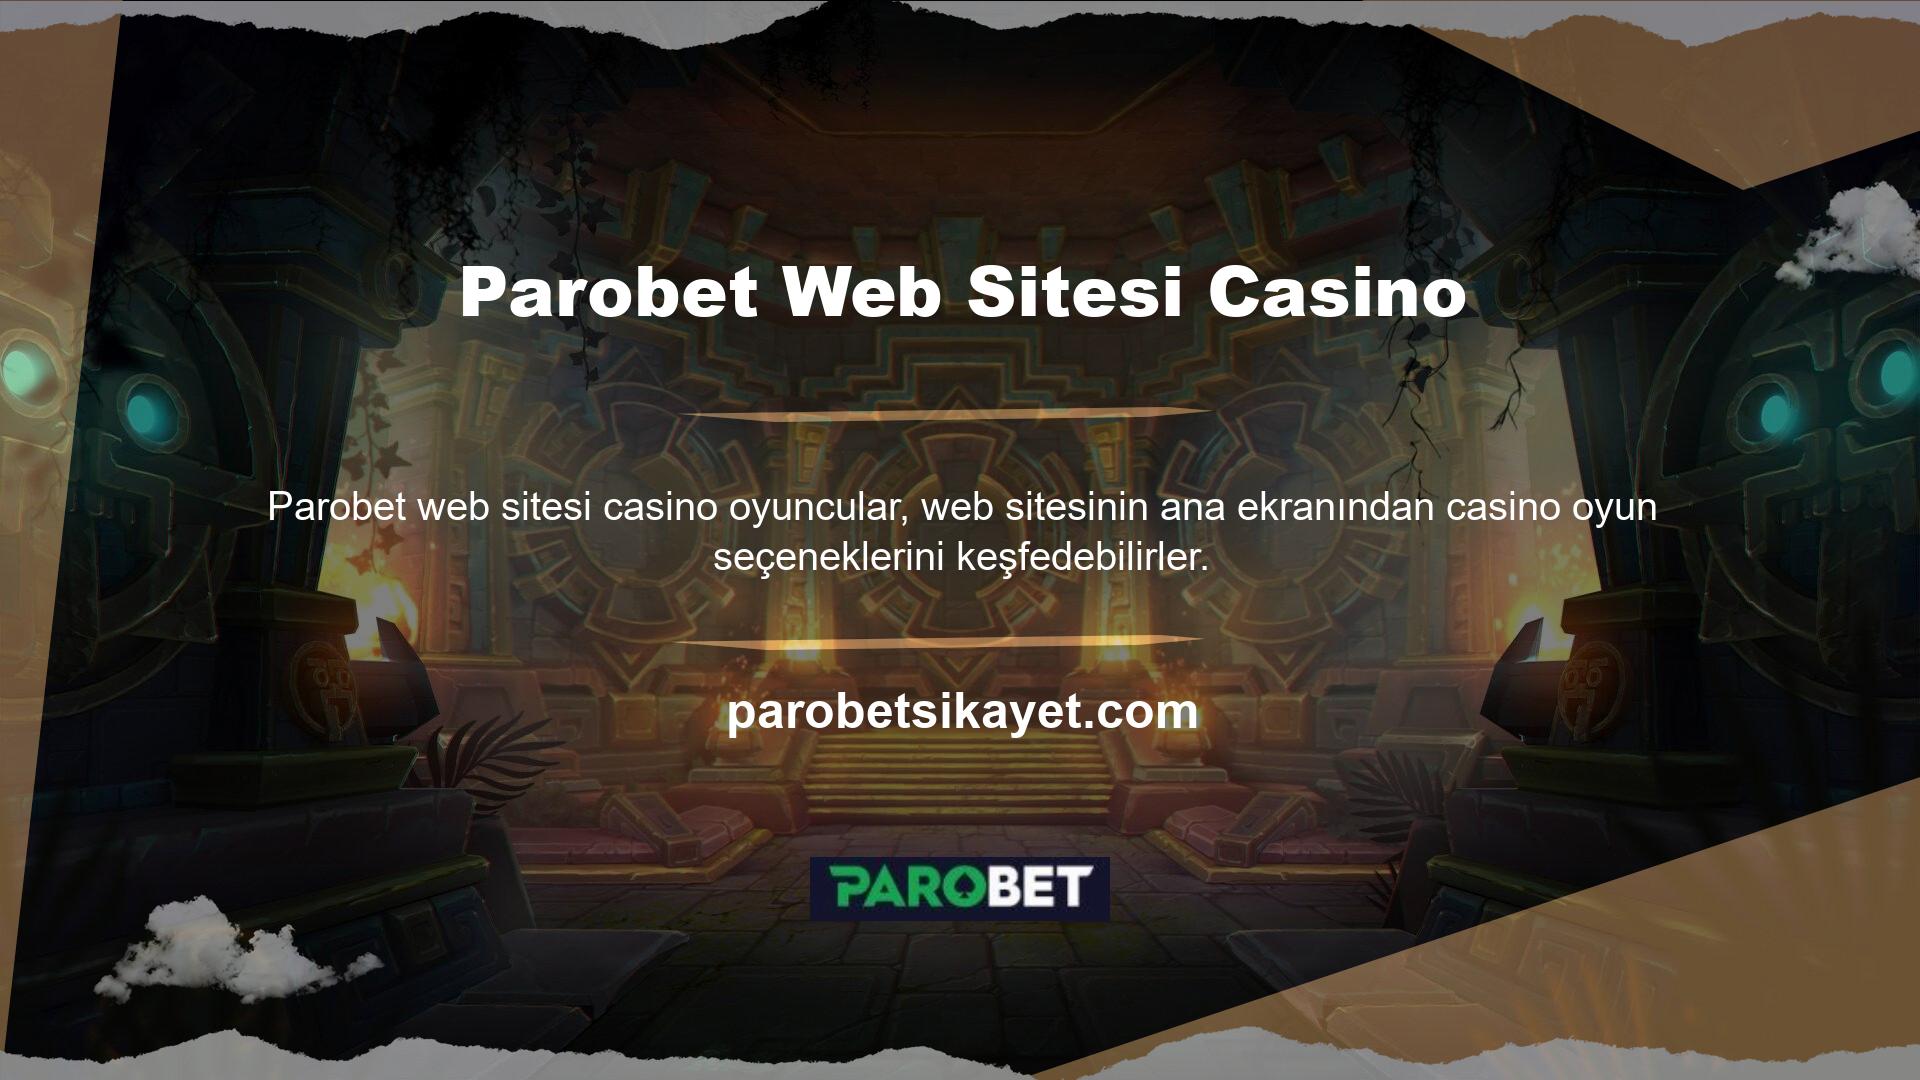 Parobet sitesi, casino uygulaması üzerinden kullanıcılarına kapsamlı bir bahis profili sunmaktadır